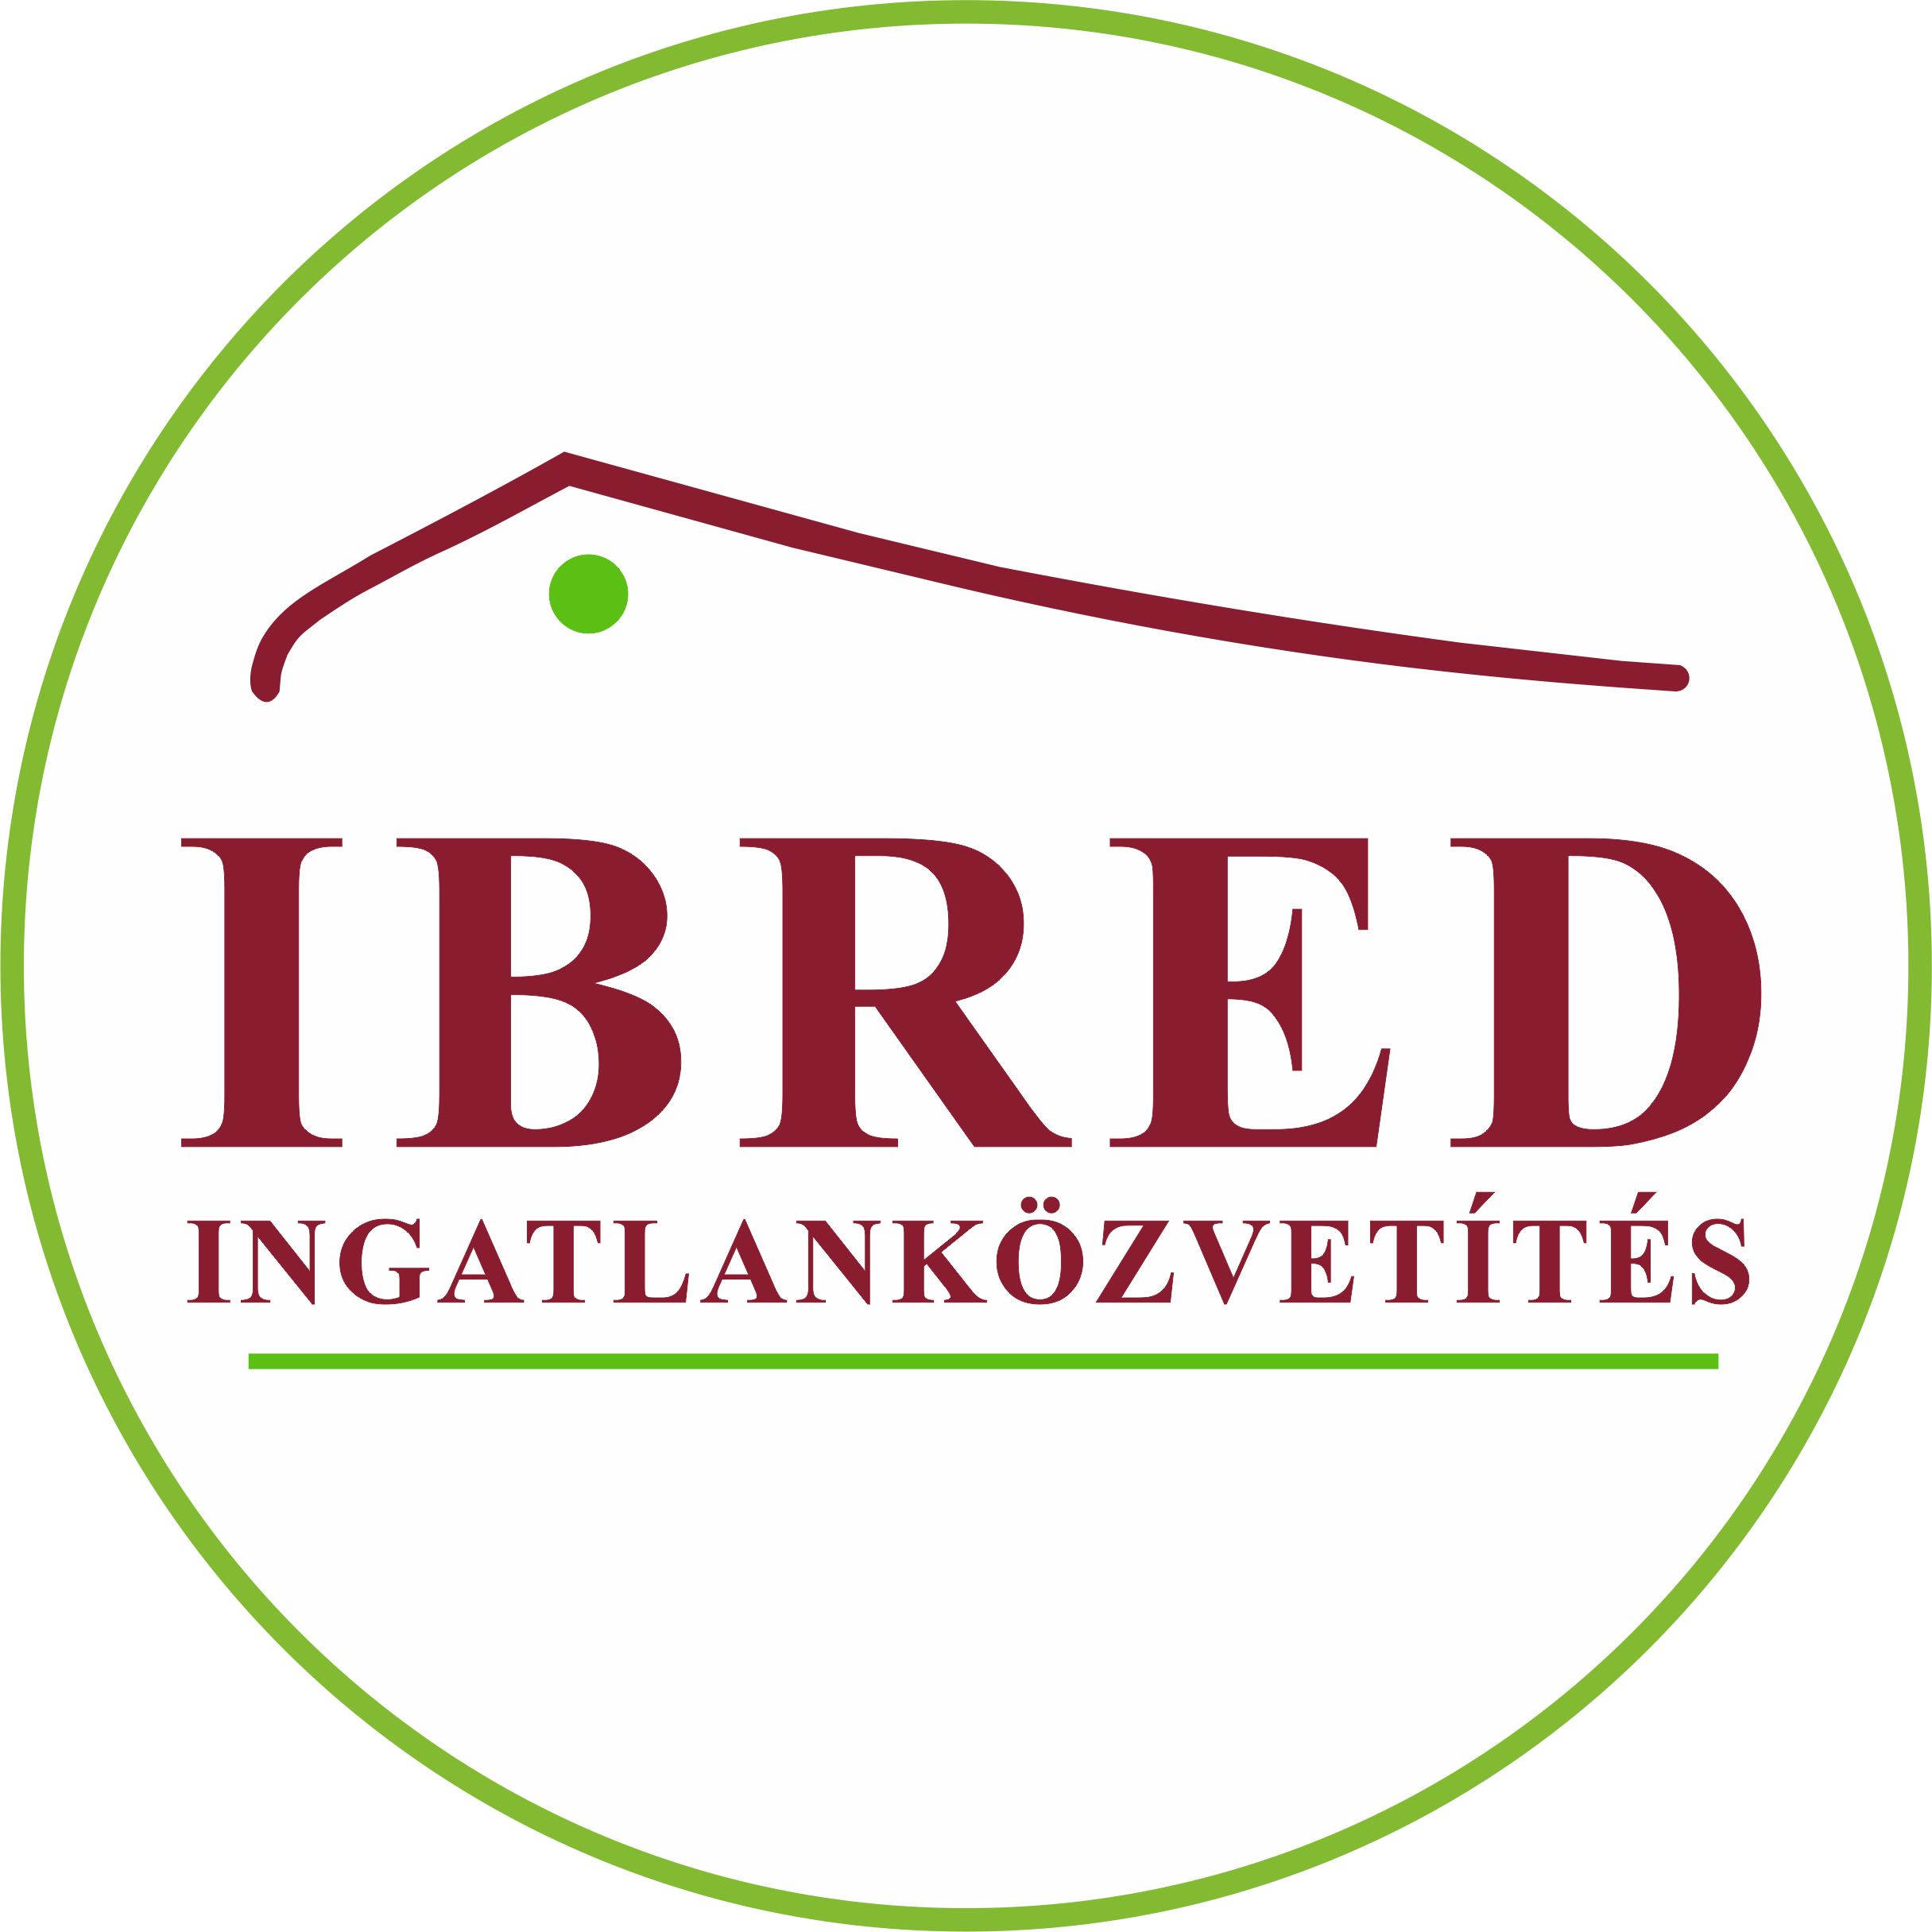 IBRED INGATLAN - A budai hegyvidék ingatlanközvetítője 1992 óta